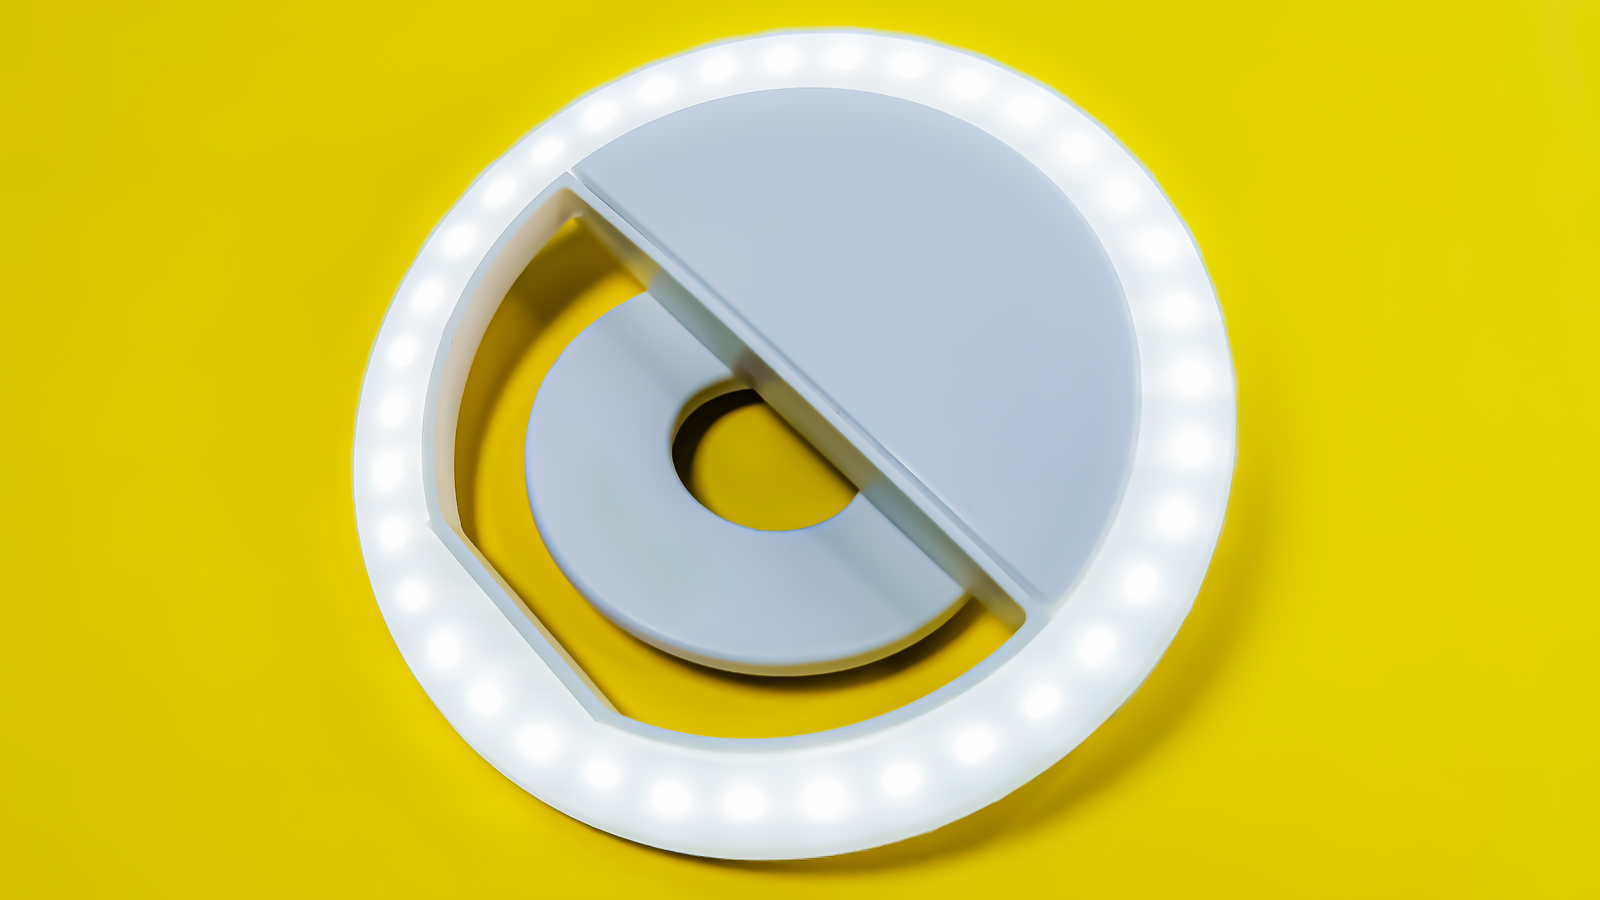 Cận cảnh đèn LED selfie dạng vòng tròn dành cho camera điện thoại trên nền màu vàng sáng